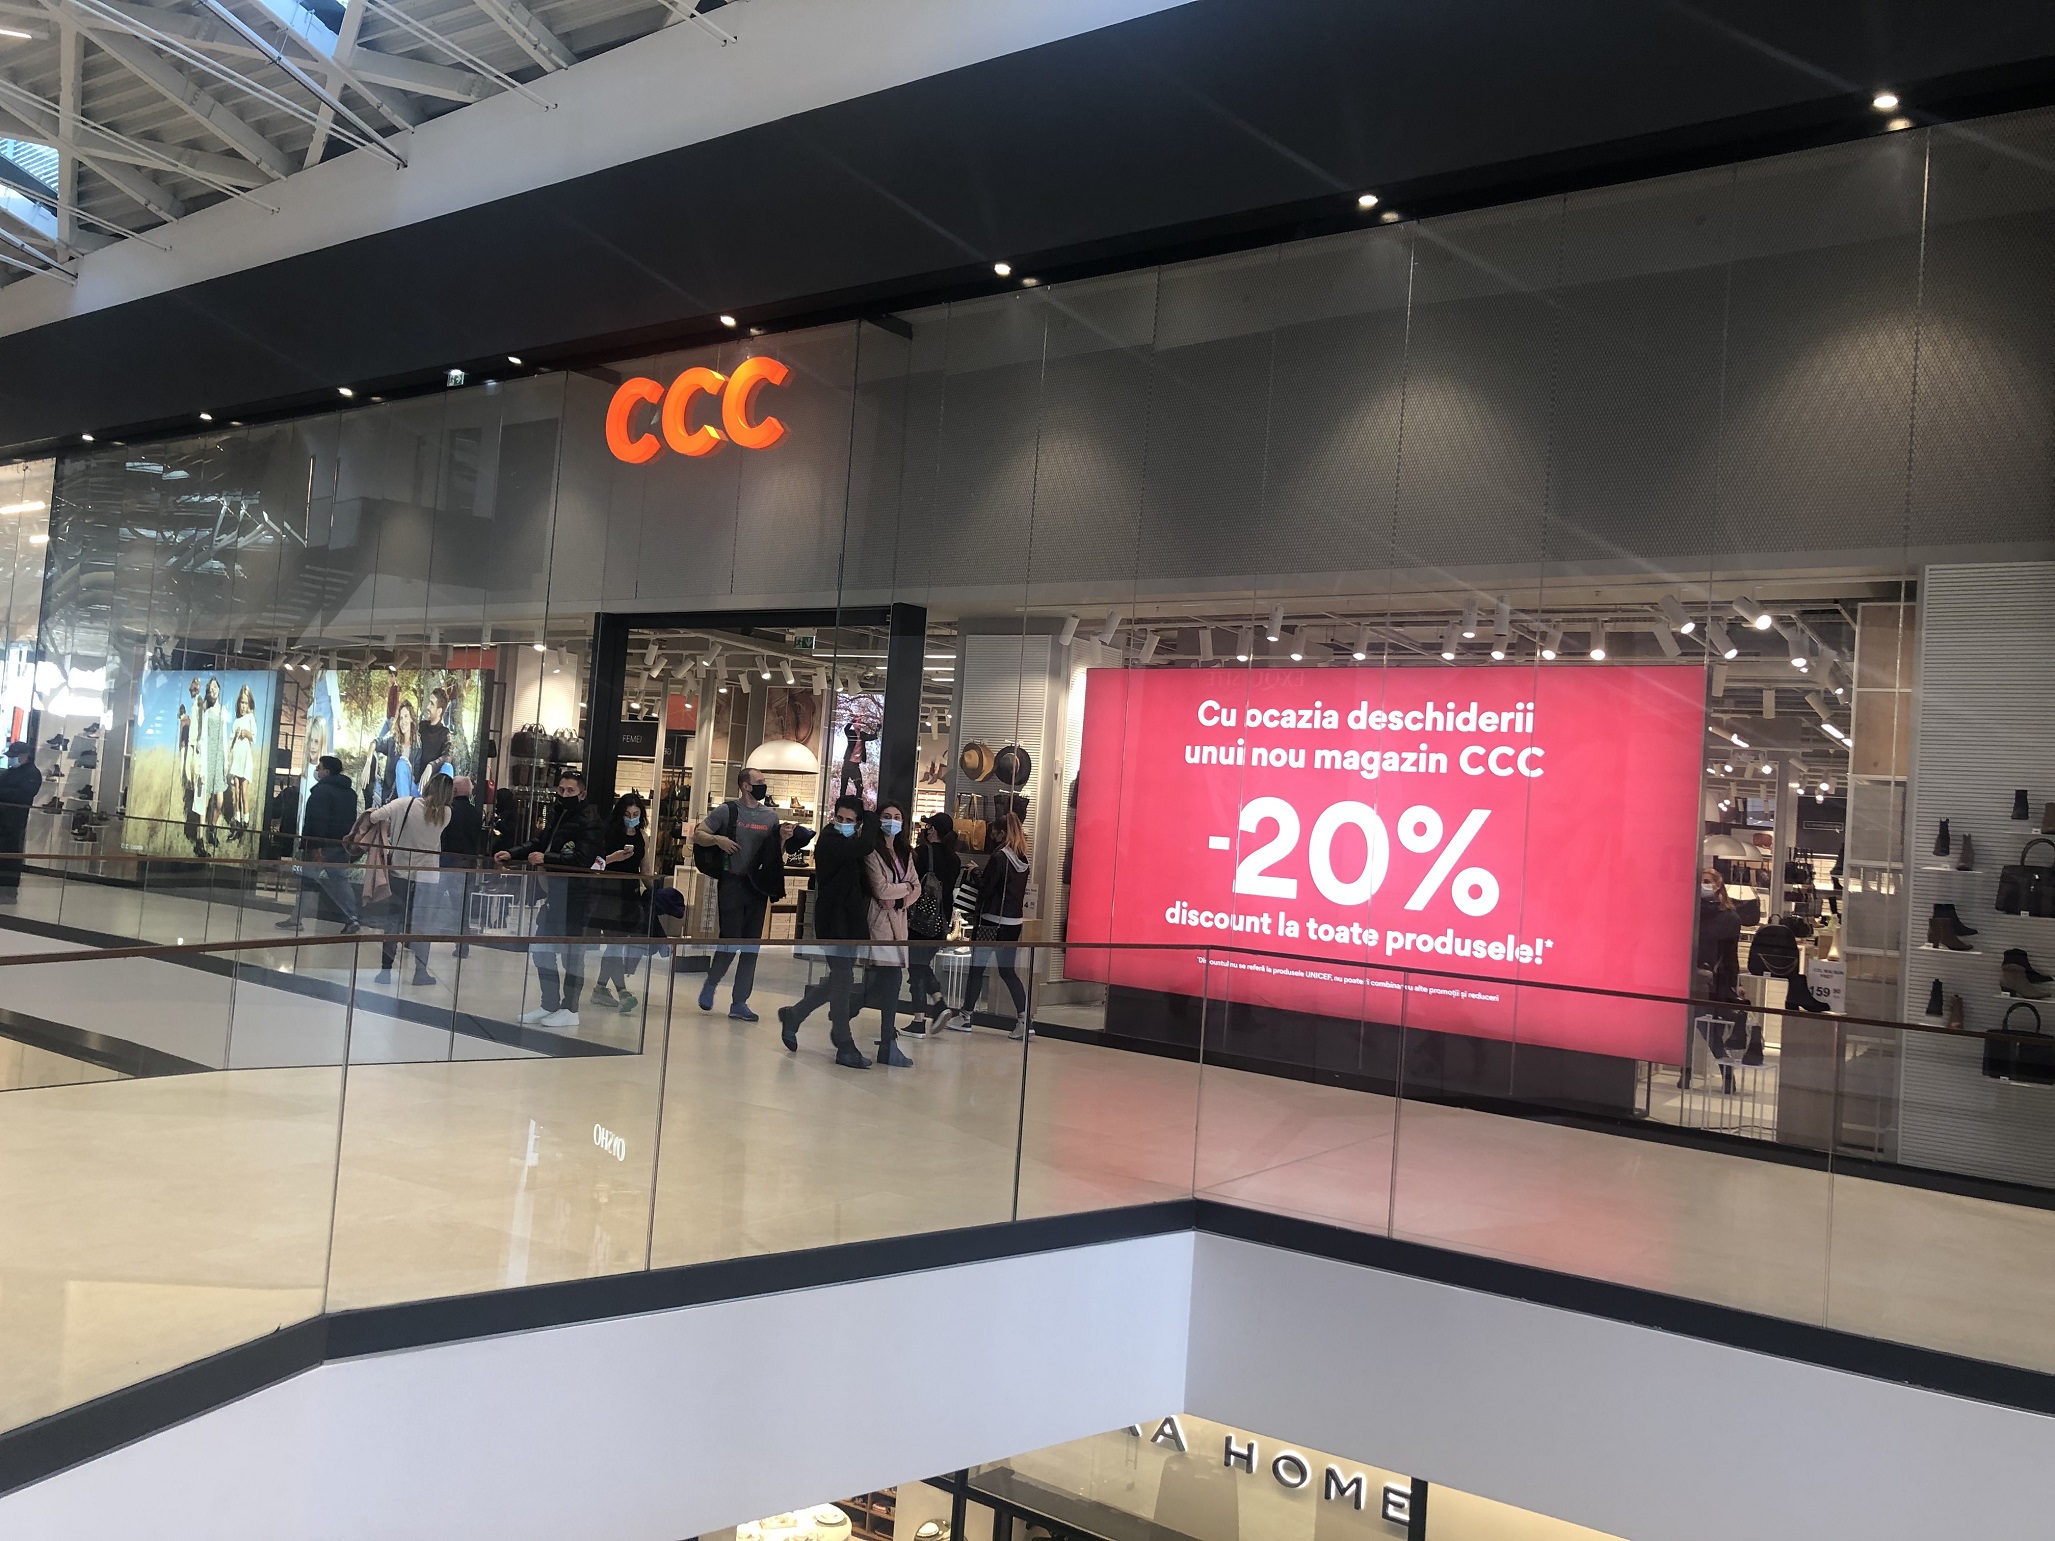 Retailerul polonez de încălţăminte CCC a deschis un magazin în centrul comercial AFI Braşov. Joanna Jozwiak, CEO: Facem eforturi pentru a menţine afacerea stabilă şi pentru a ne dezvolta în continuare